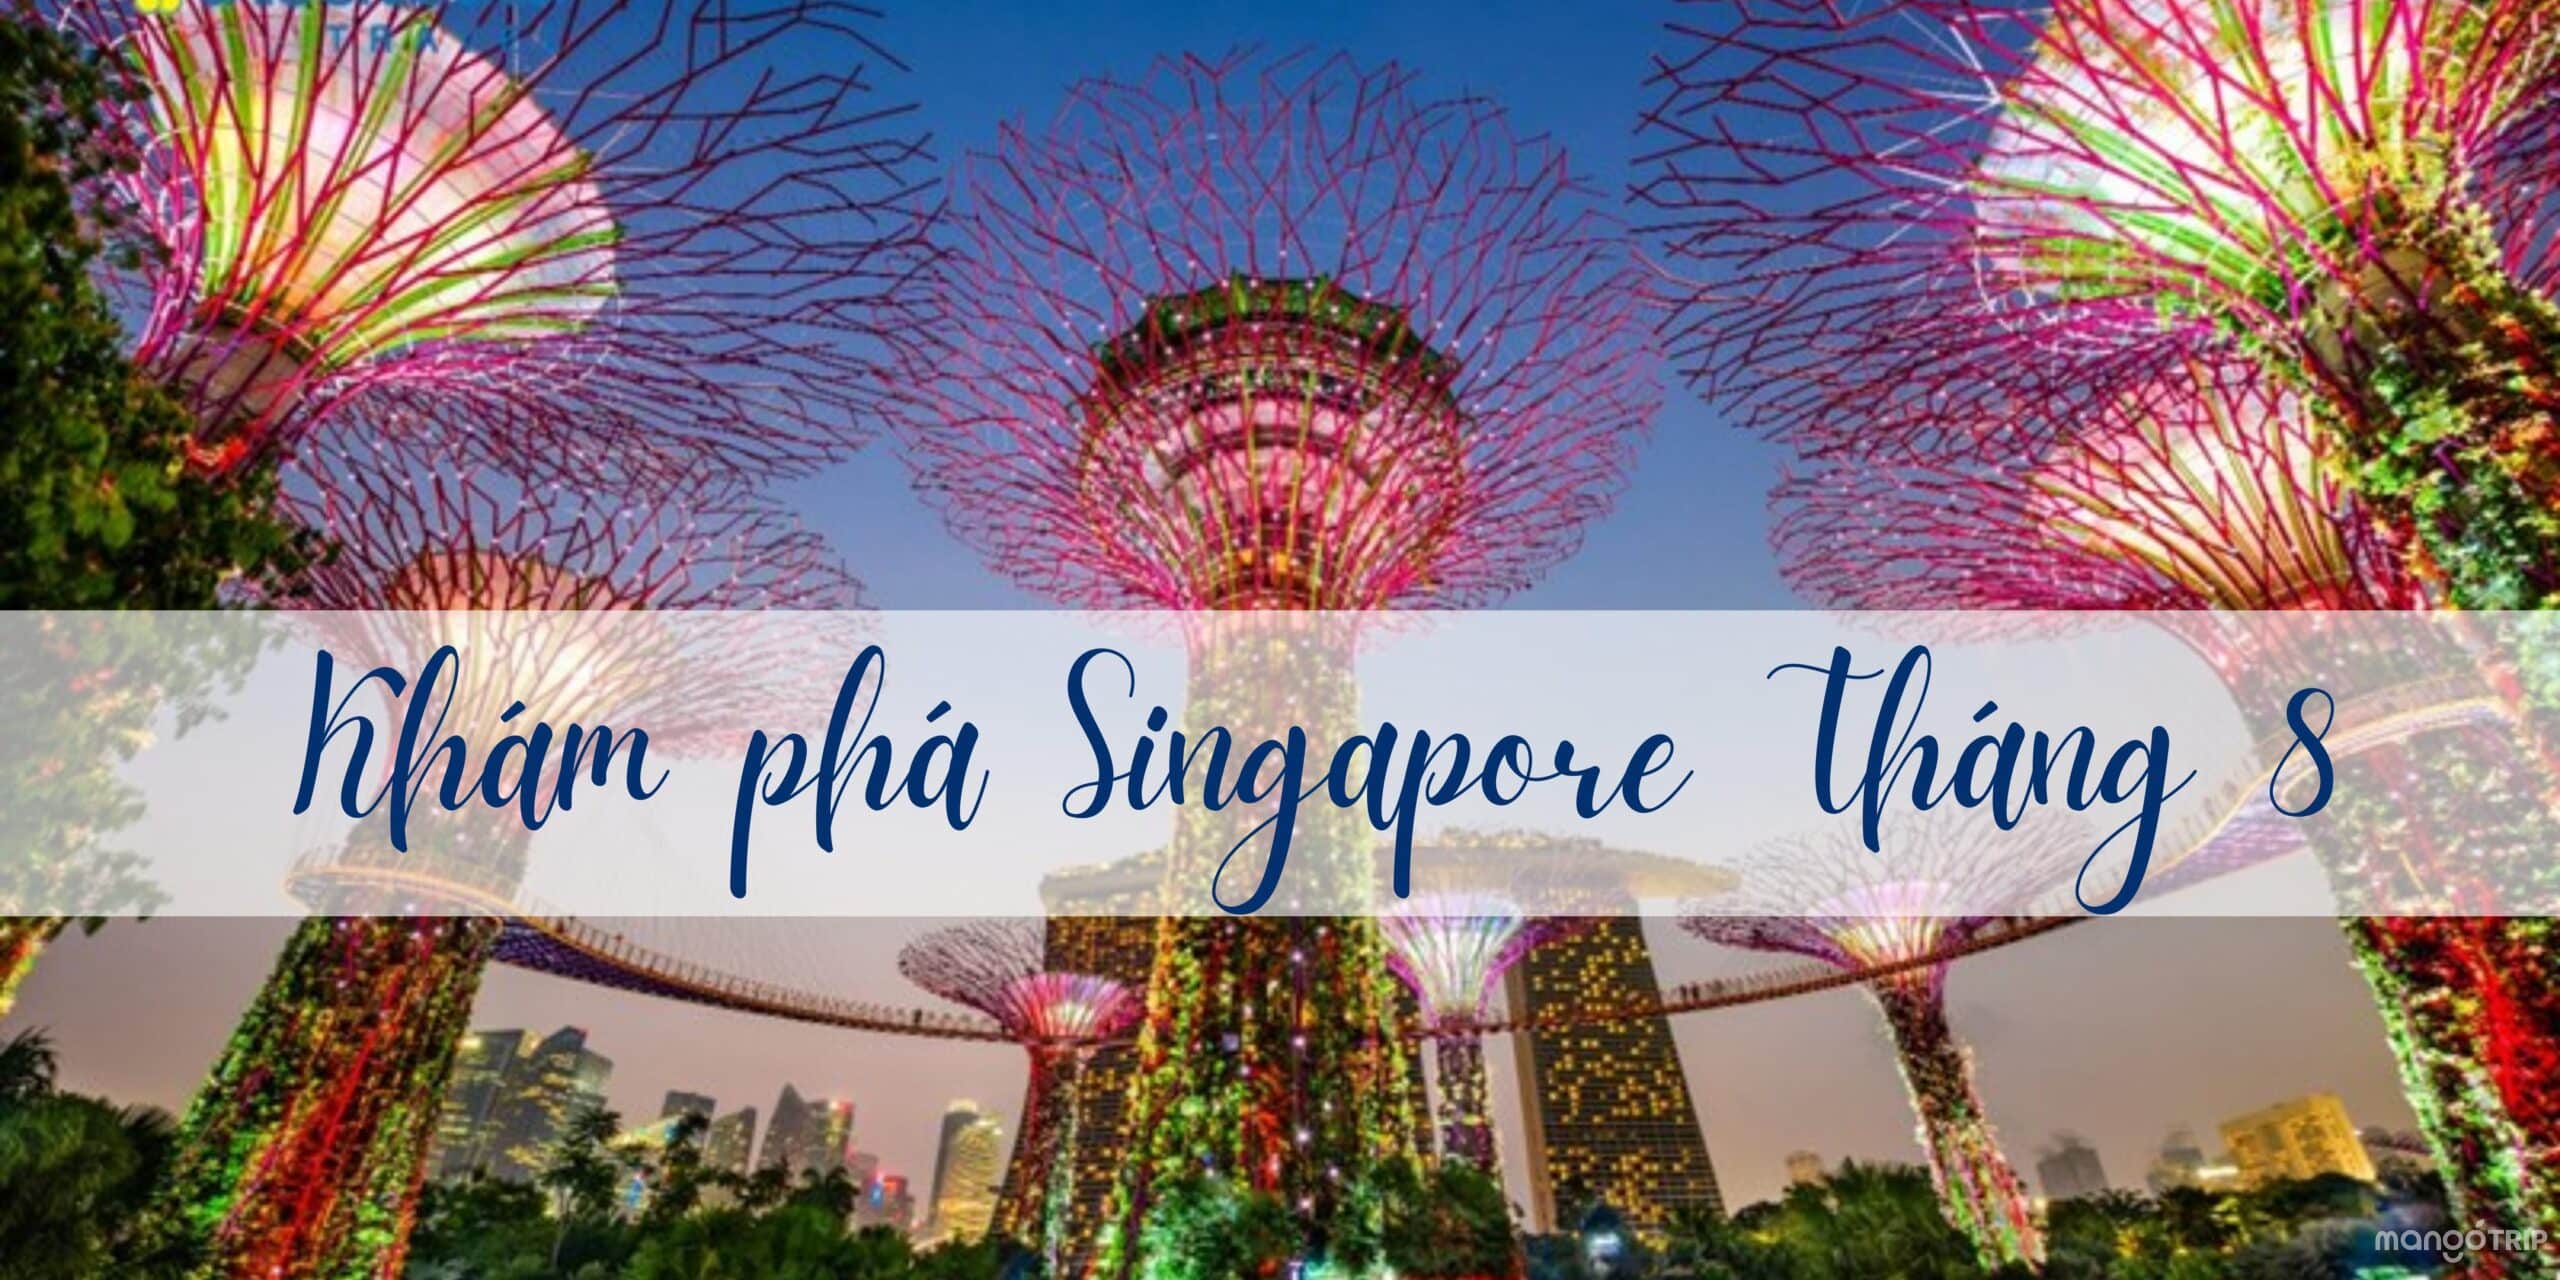 Du lịch Singapore tháng 8-Mùa của các lễ hội nổi bật tại đảo quốc sư tử